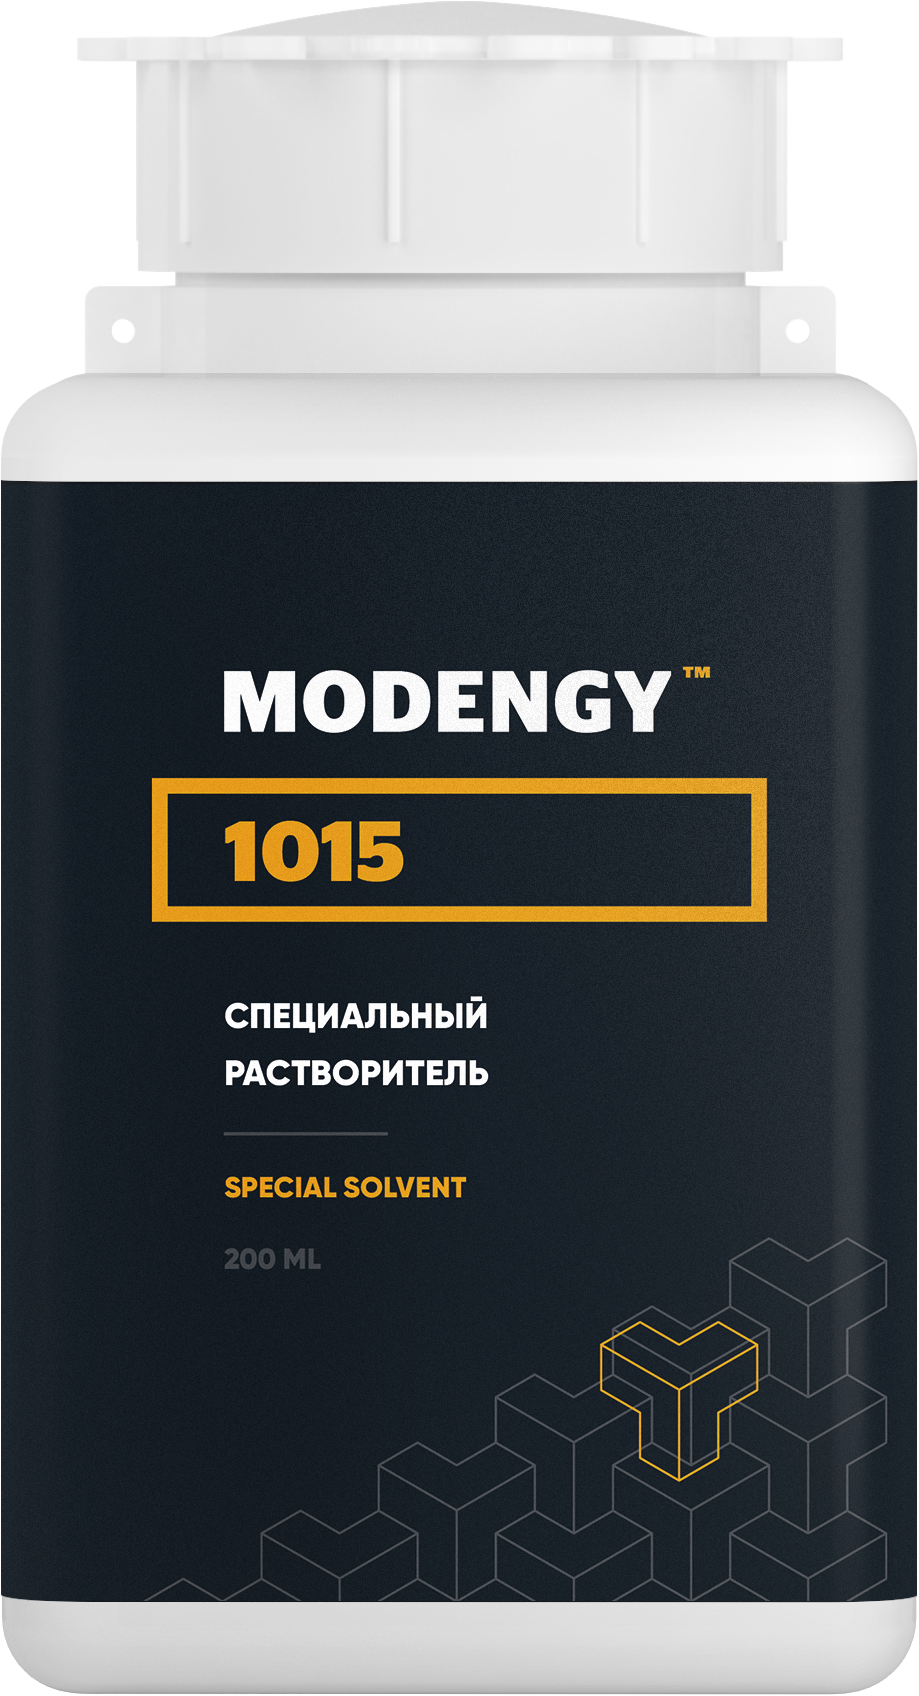 Специальный растворитель MODENGY 1015 (200 мл) специальный растворитель modengy 1013 4 5 л